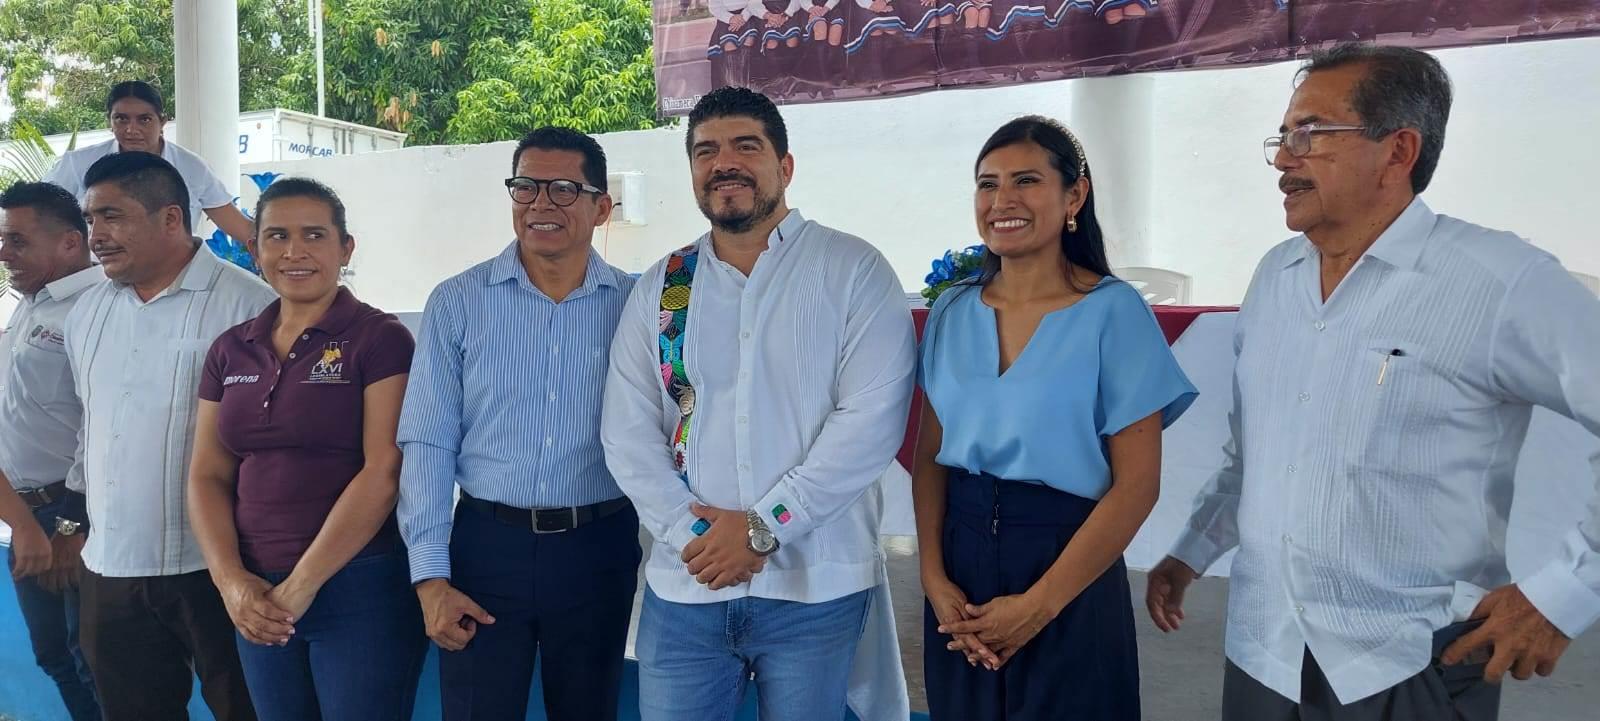 Zenyazen presume avance histórico en Veracruz de educación | VIDEO